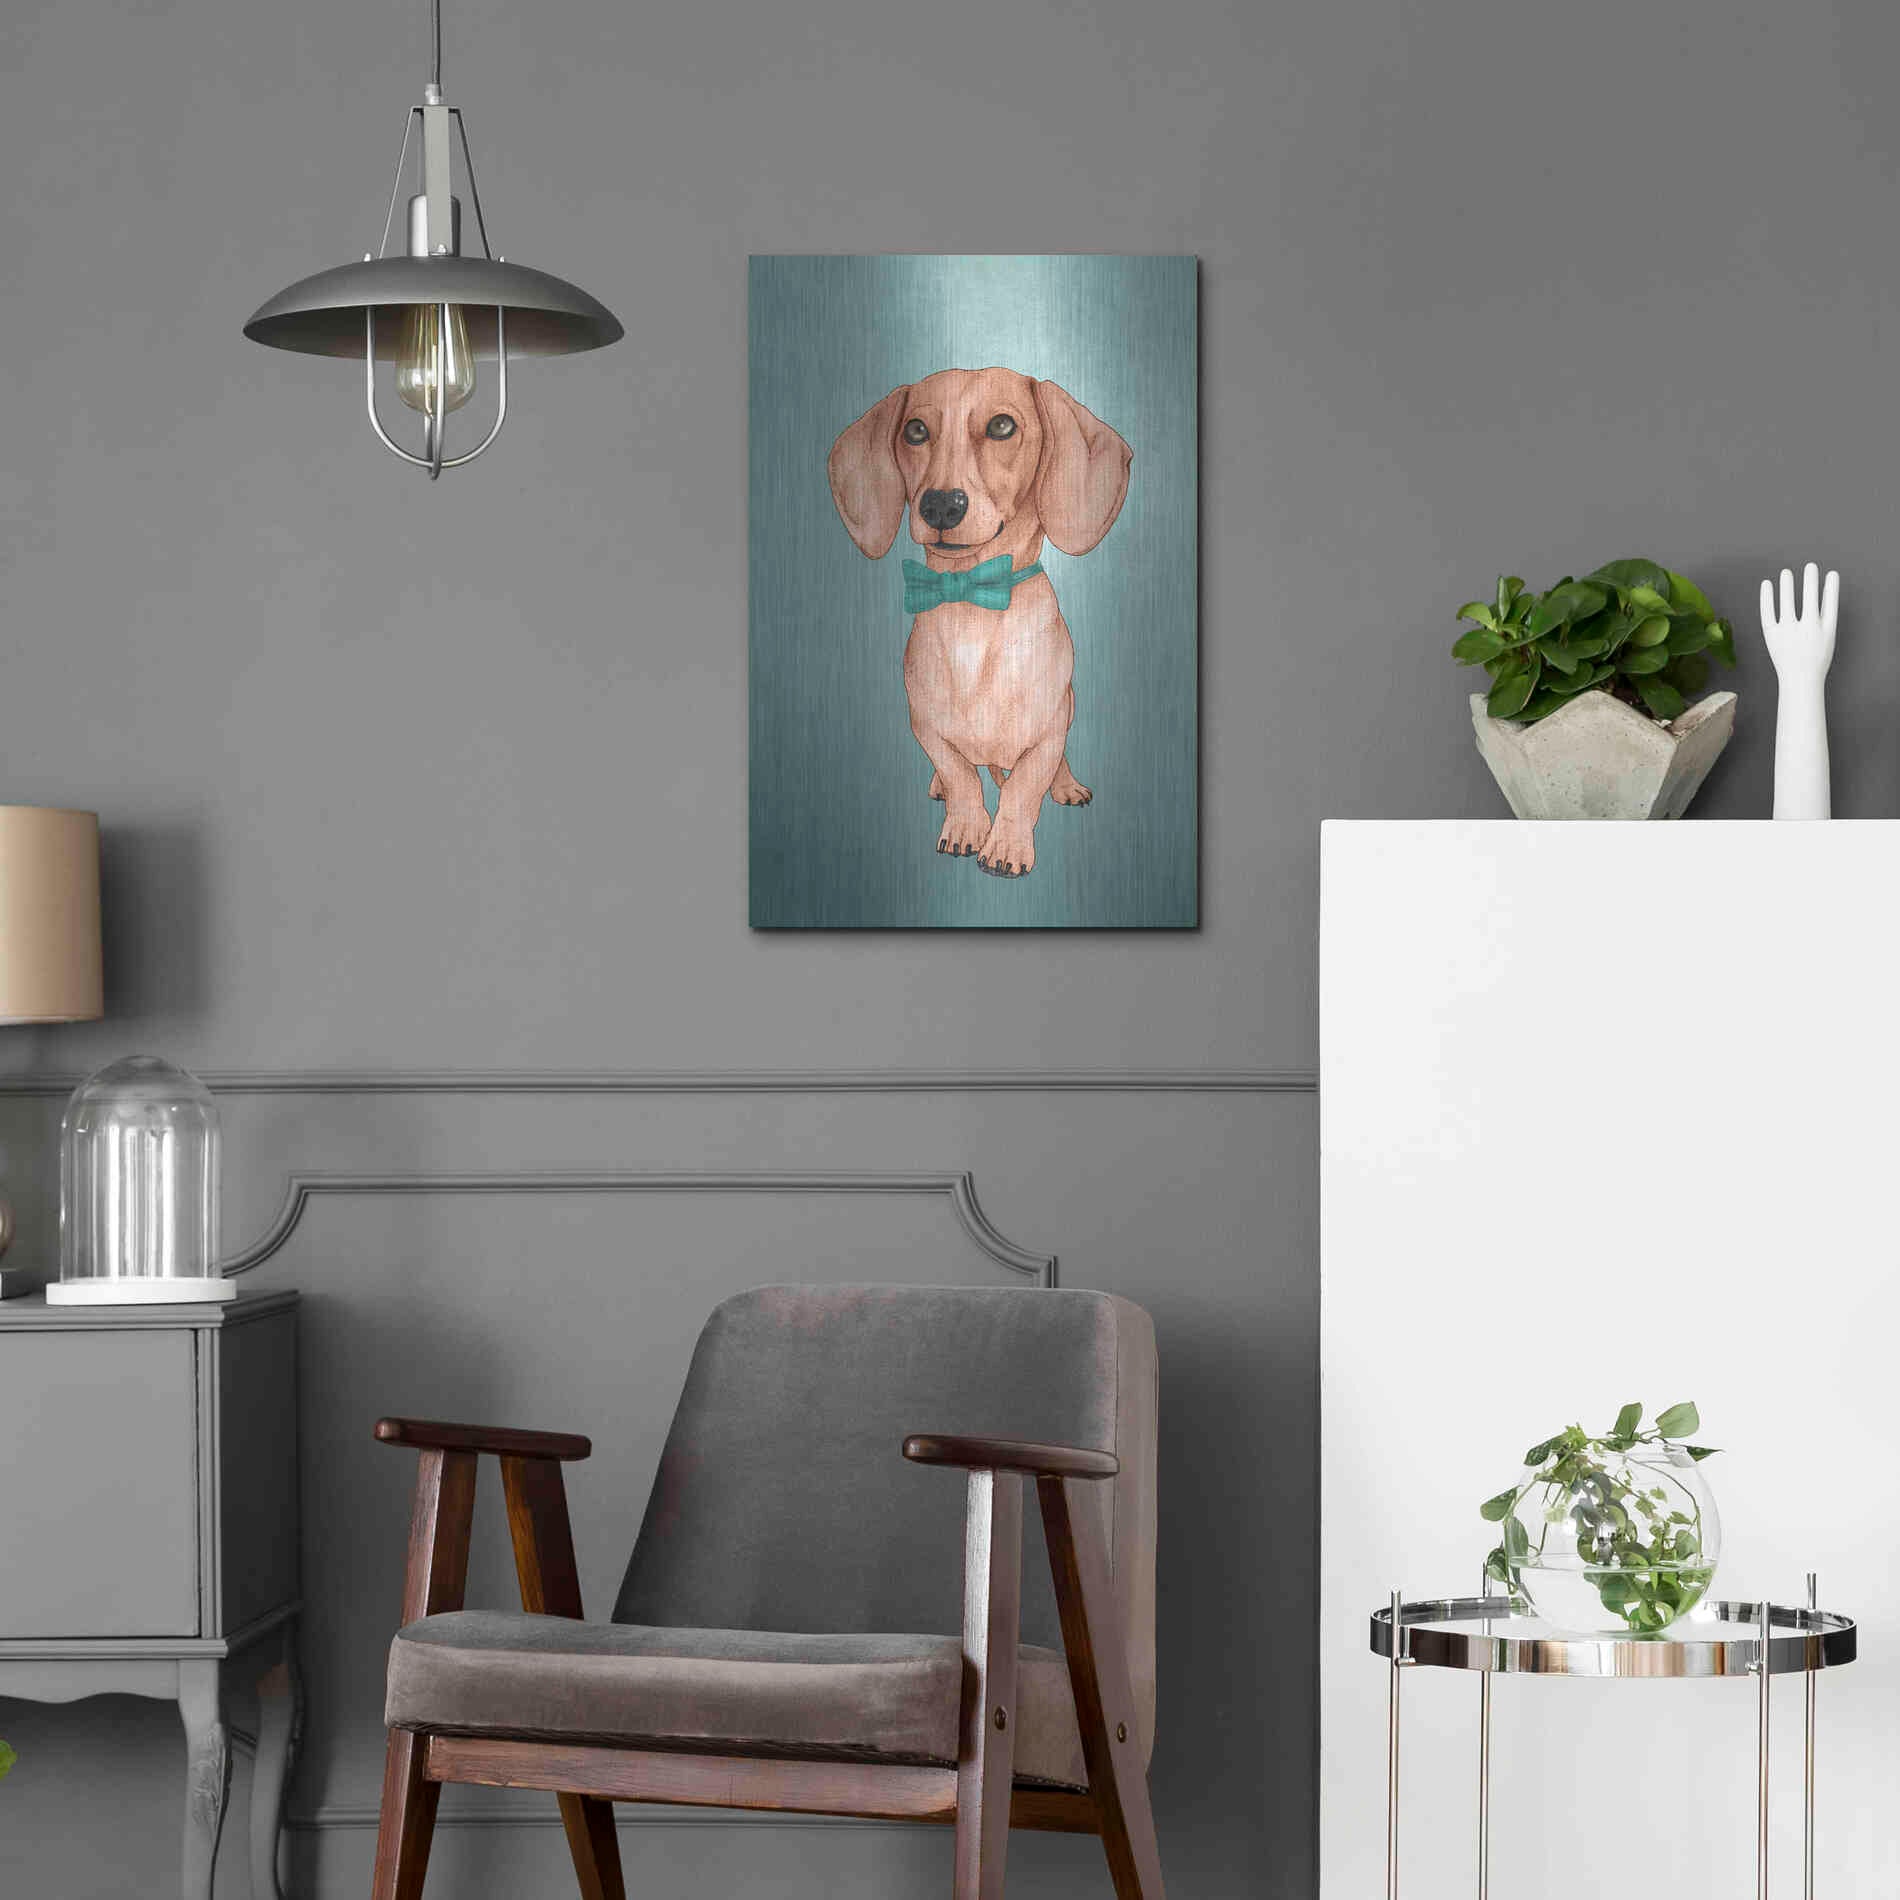 Luxe Metal Art 'The Wiener Dog' by Barruf Metal Wall Art,16x24